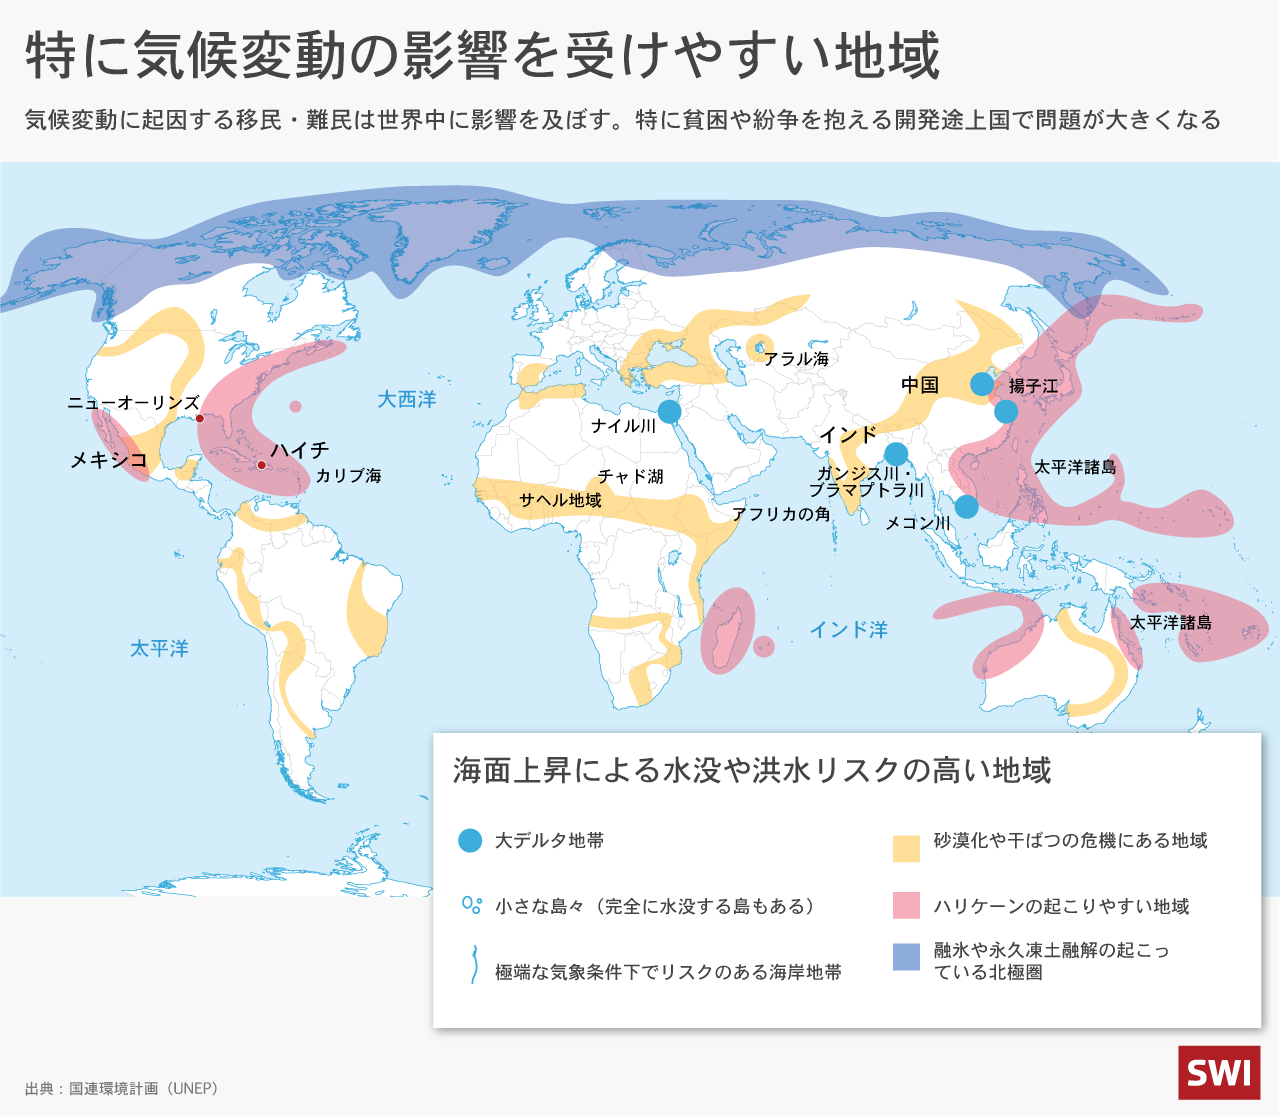 気候変動の影響を受けやすい地域を示した世界地図